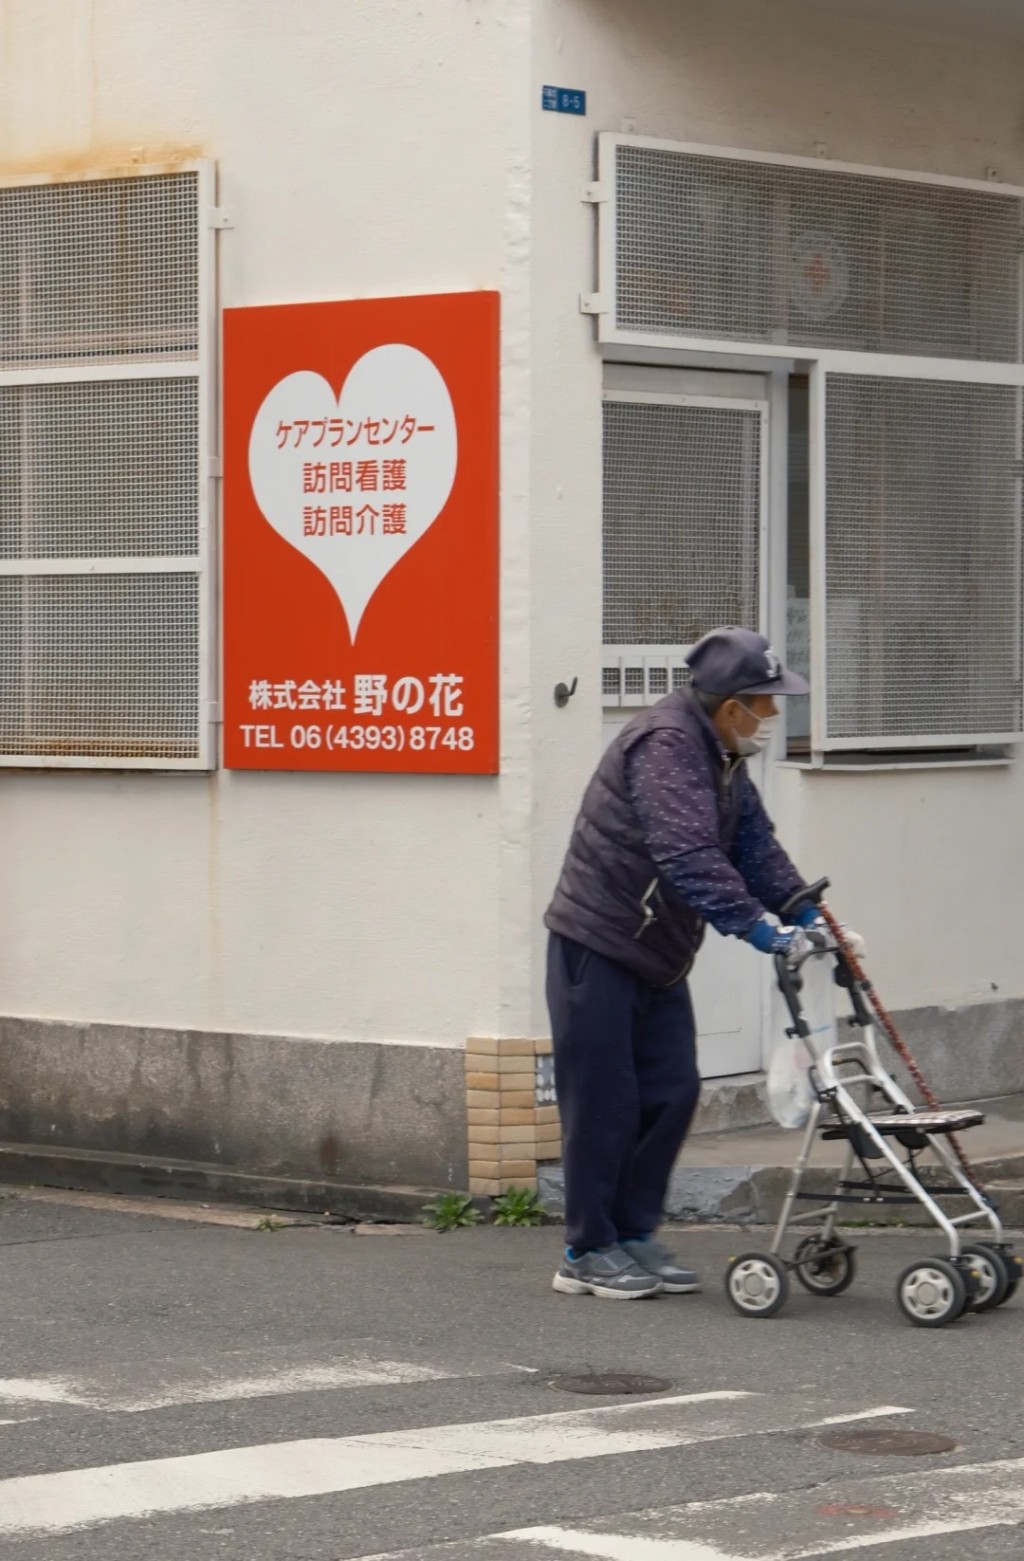 日本社会老年化严重。小红书